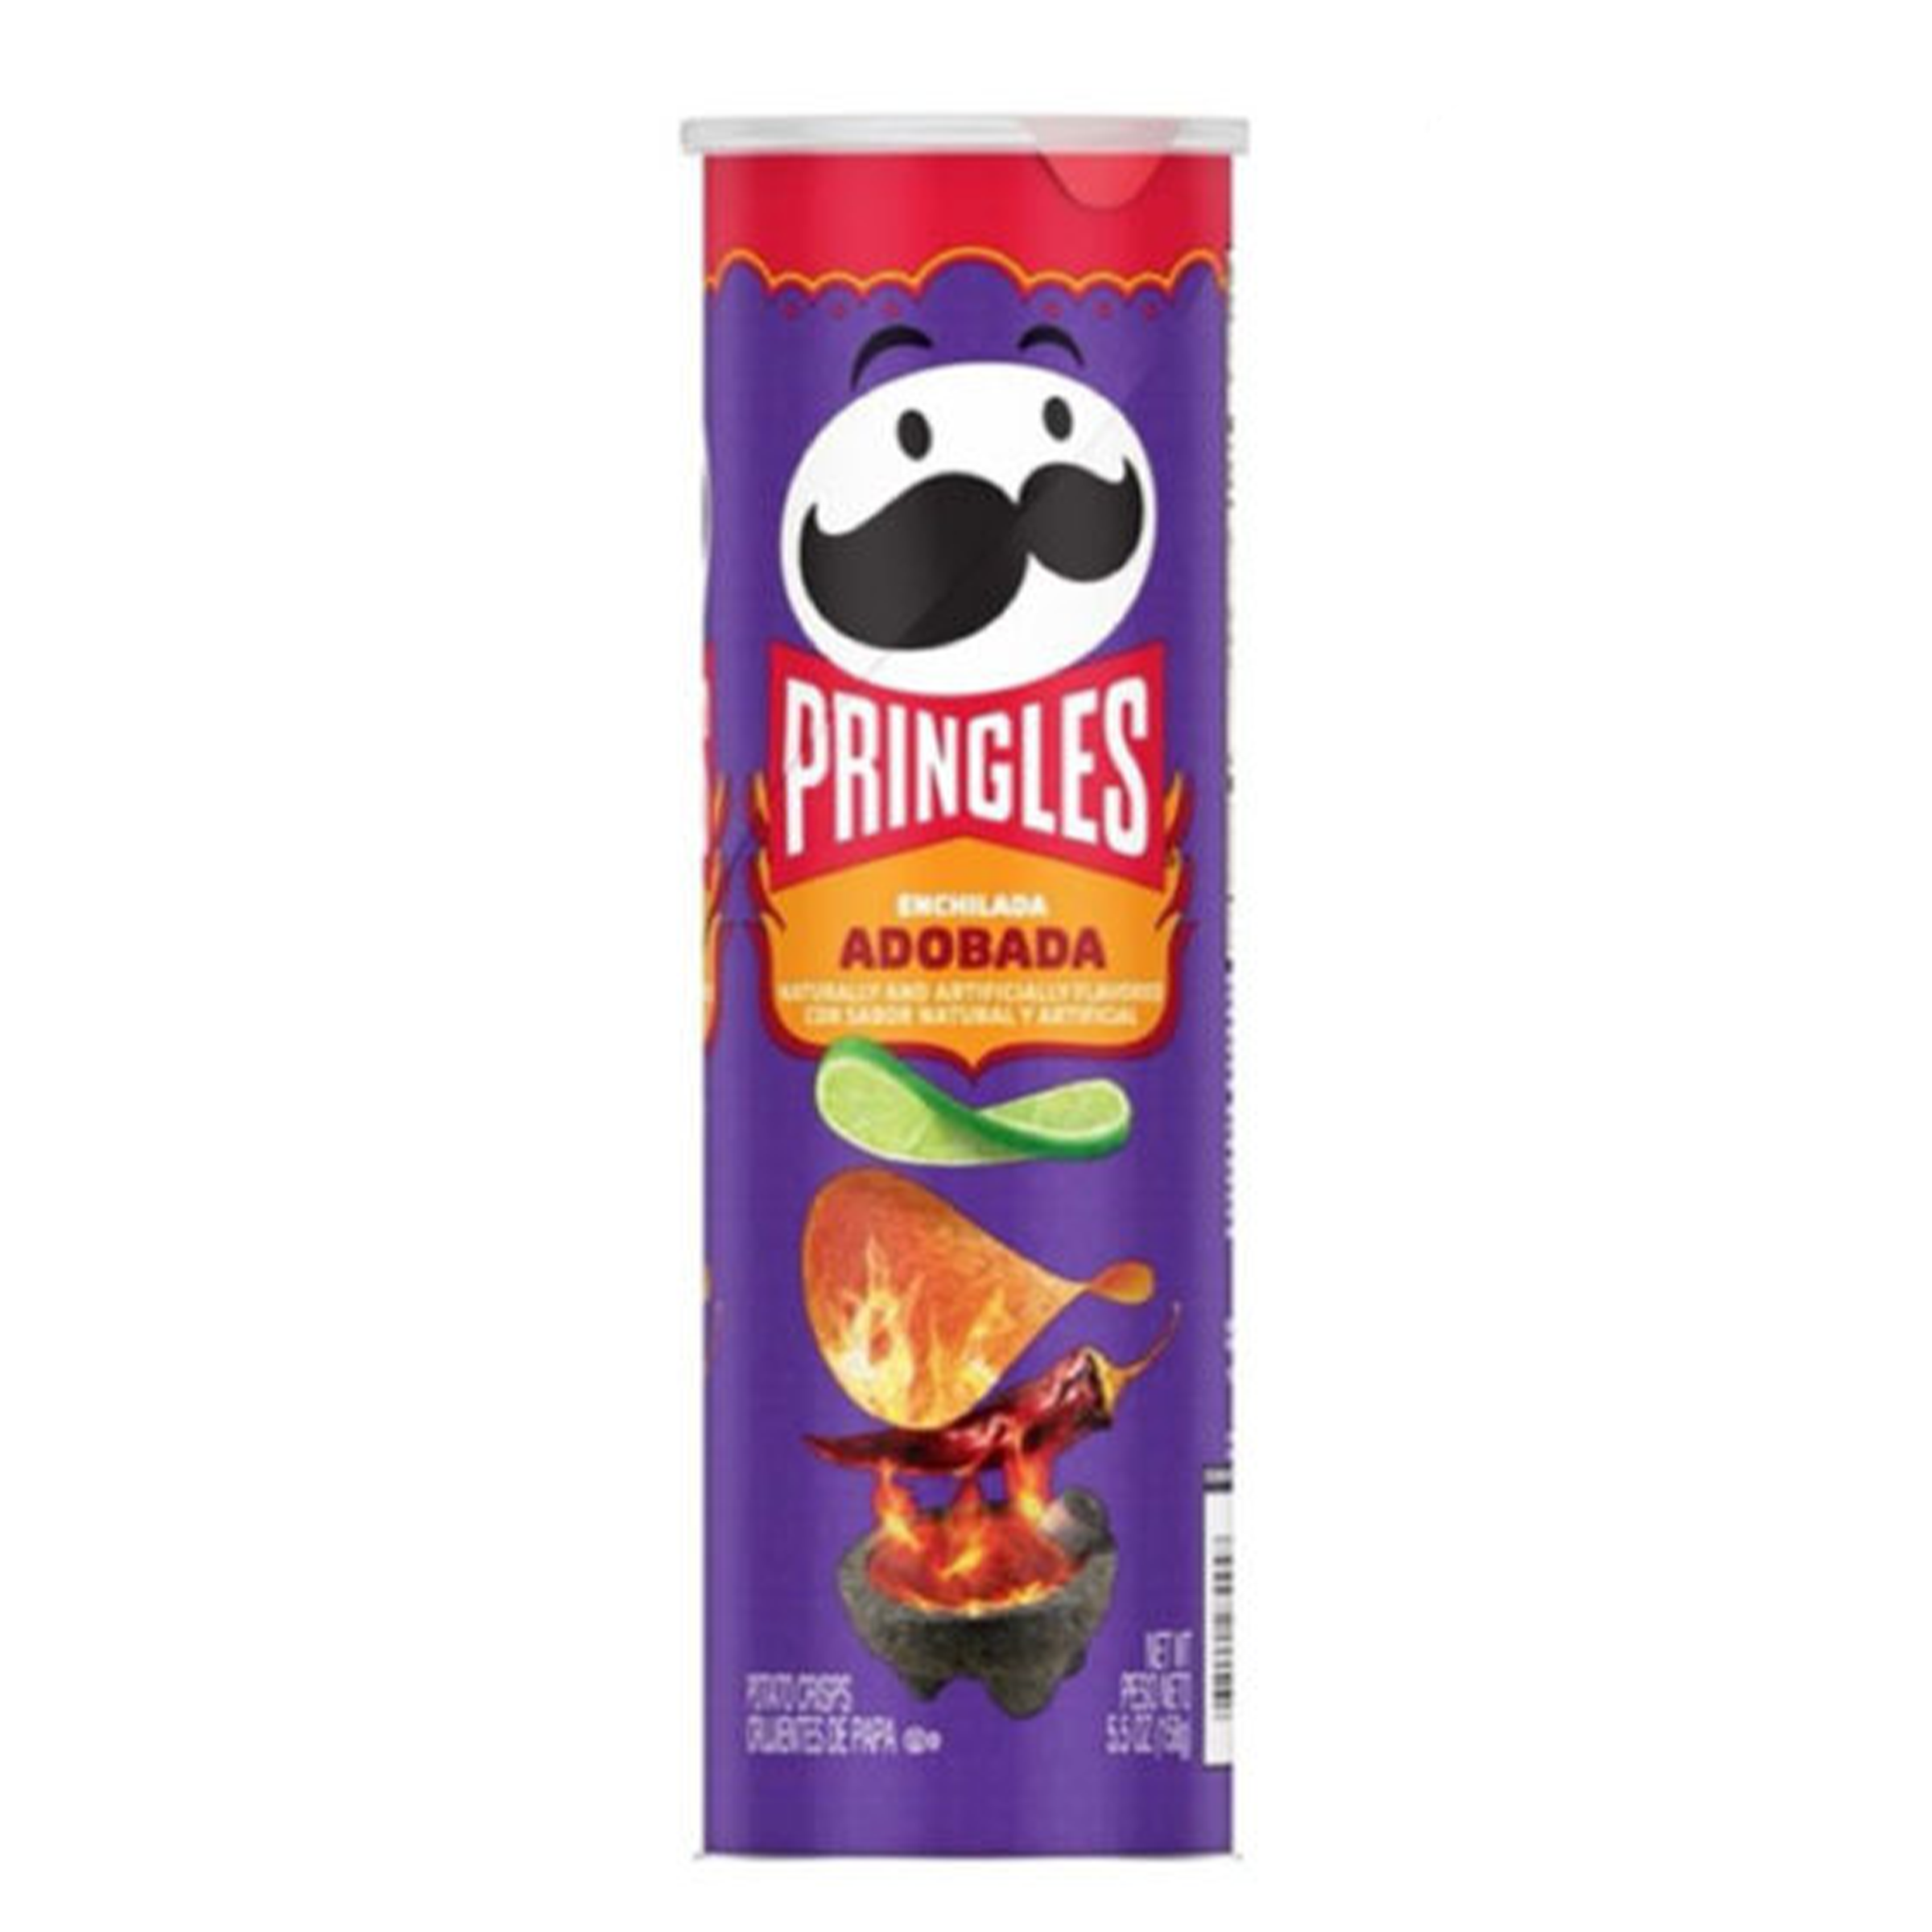 Pringles - Adobada